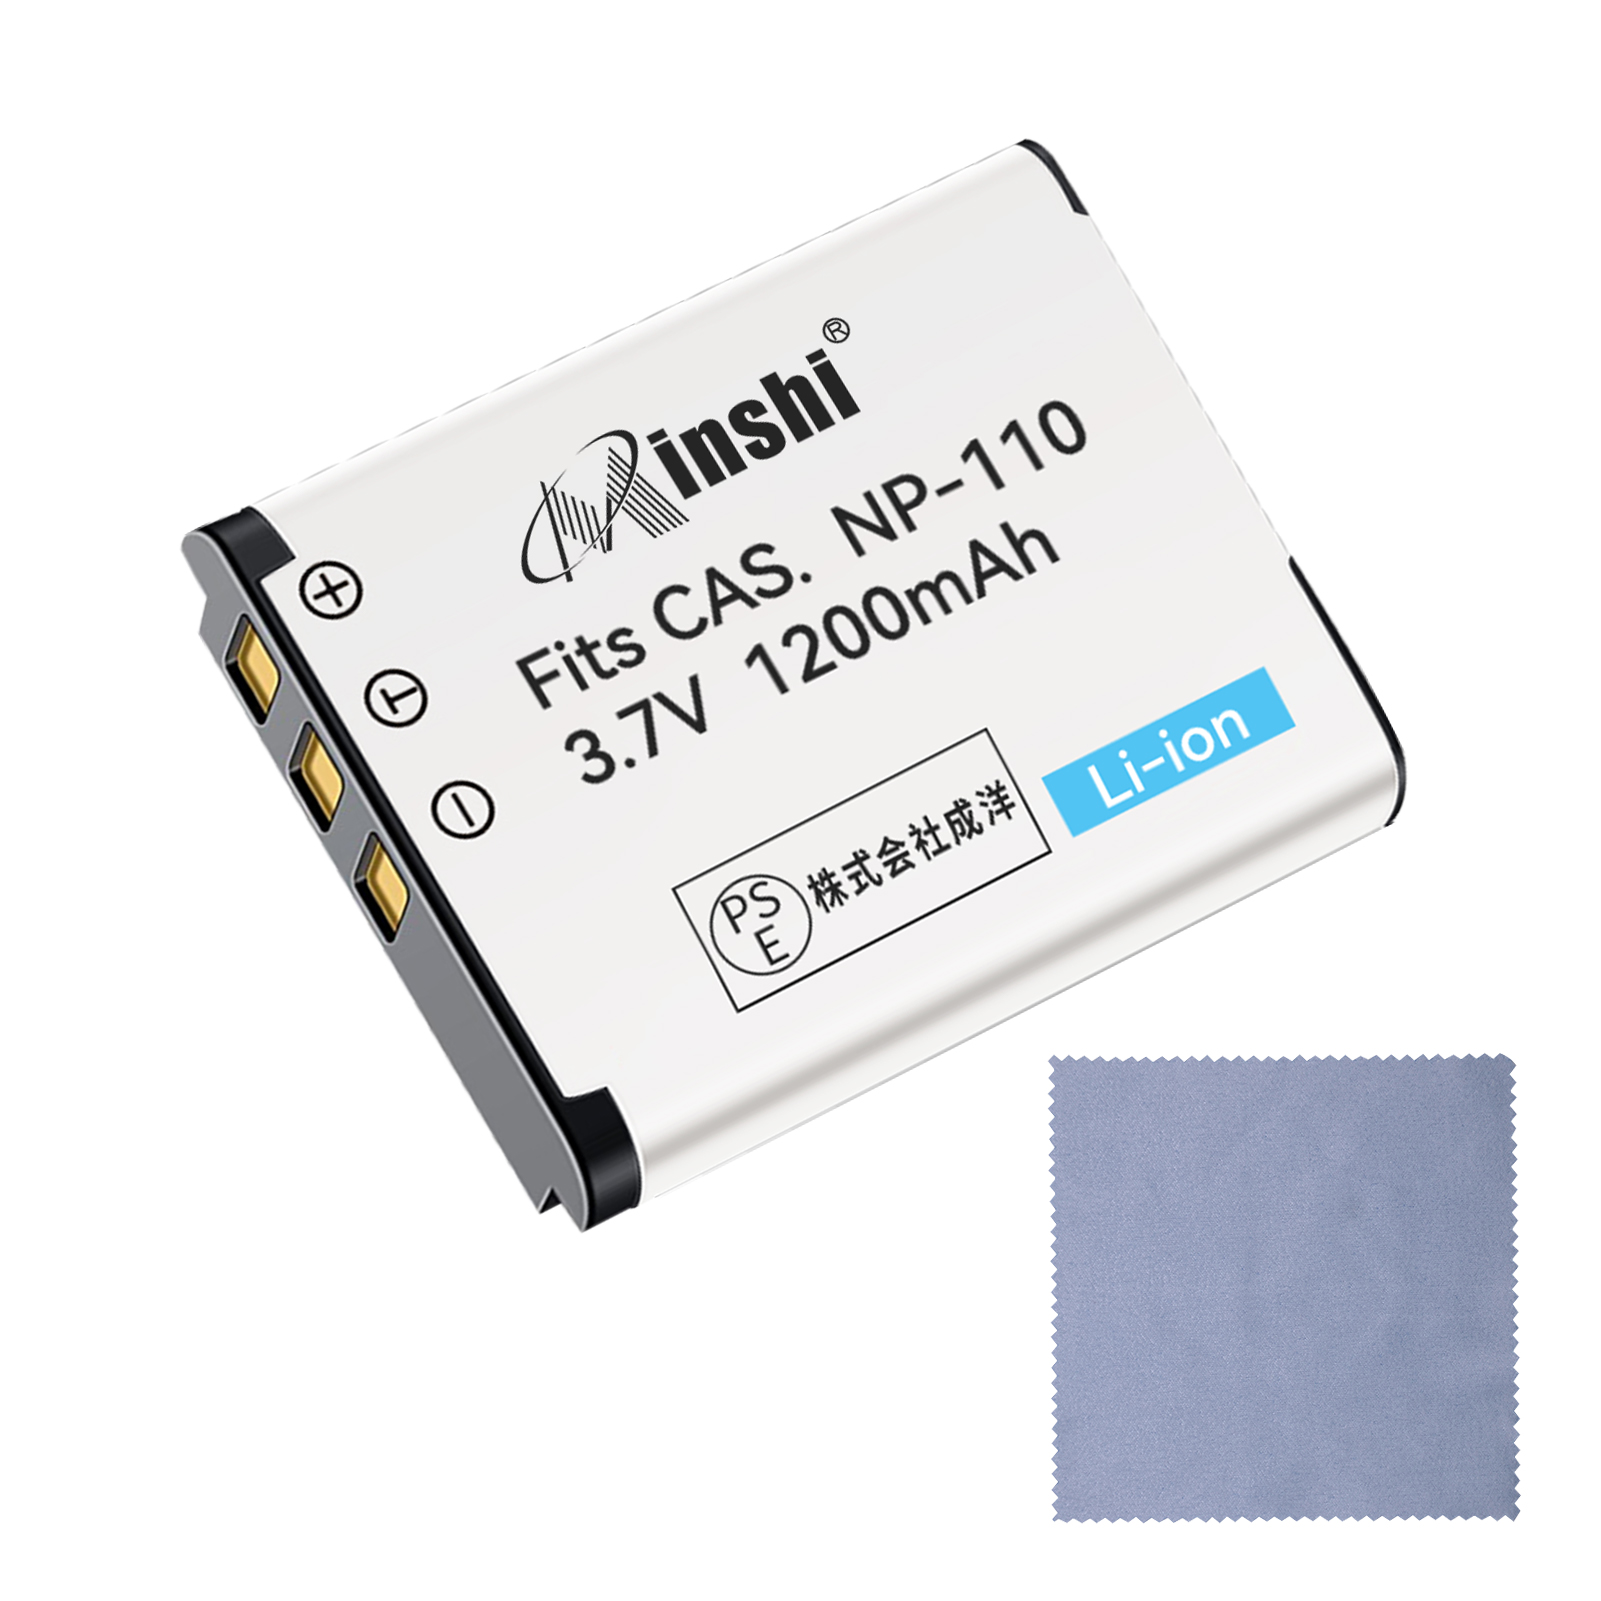 【クロス付き】minshi CASIO BN-VG212U【1200mAh 3.7V】PSE認定済 高品質NP-160 NP-110互換バッテリーPHB